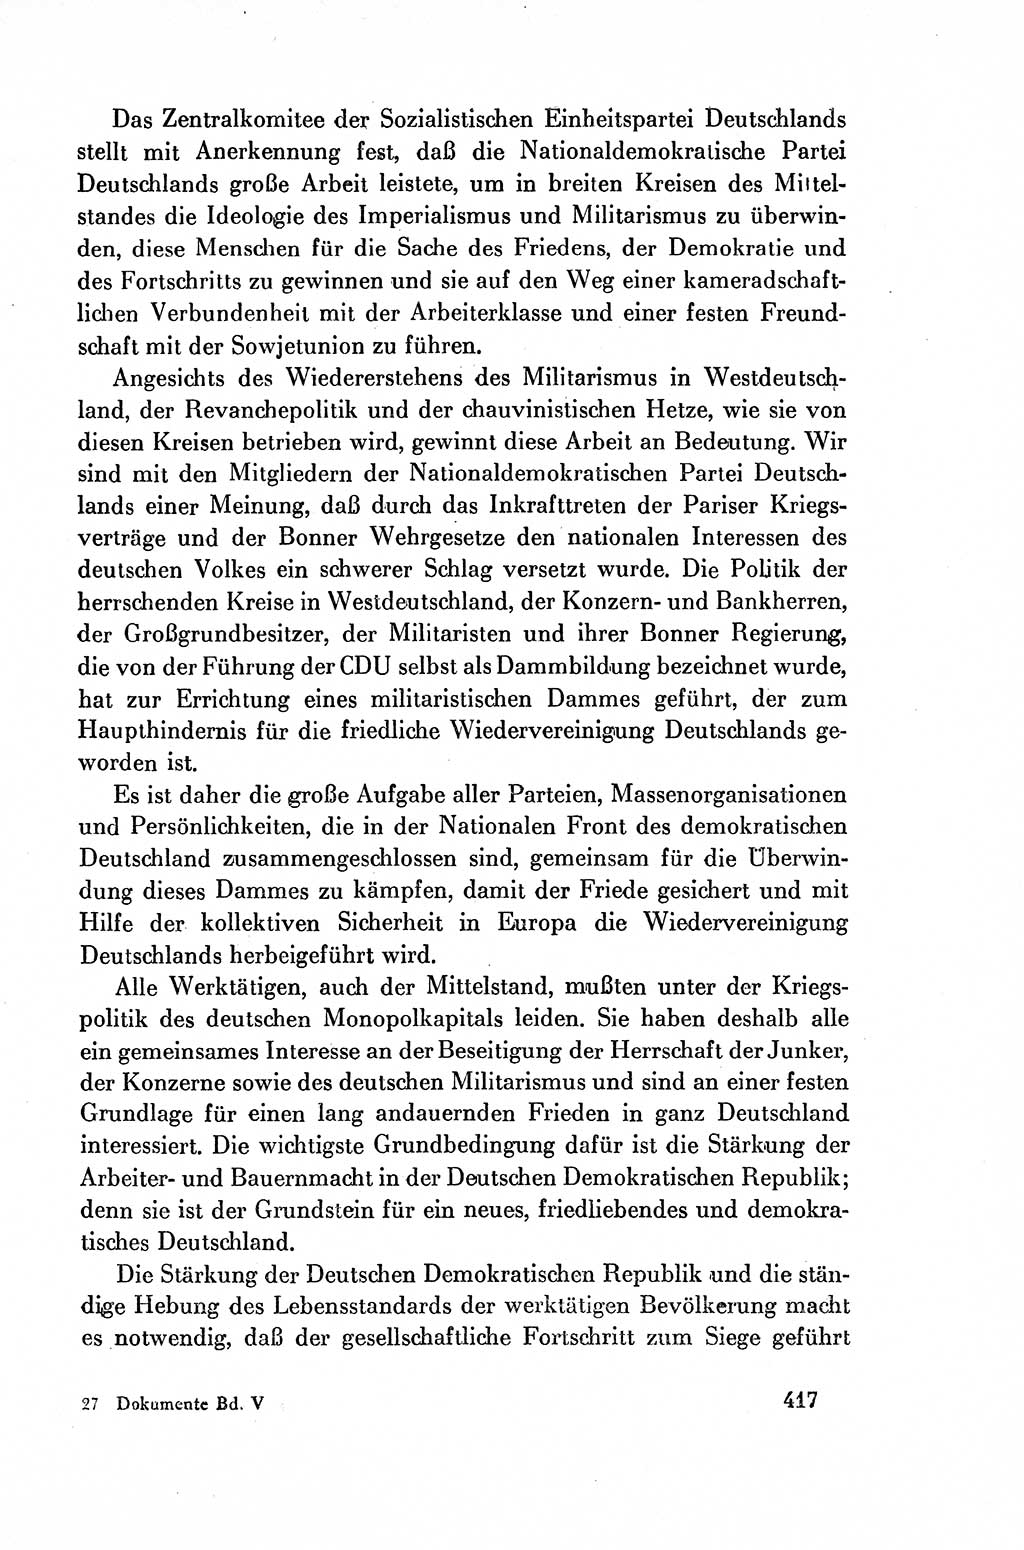 Dokumente der Sozialistischen Einheitspartei Deutschlands (SED) [Deutsche Demokratische Republik (DDR)] 1954-1955, Seite 417 (Dok. SED DDR 1954-1955, S. 417)